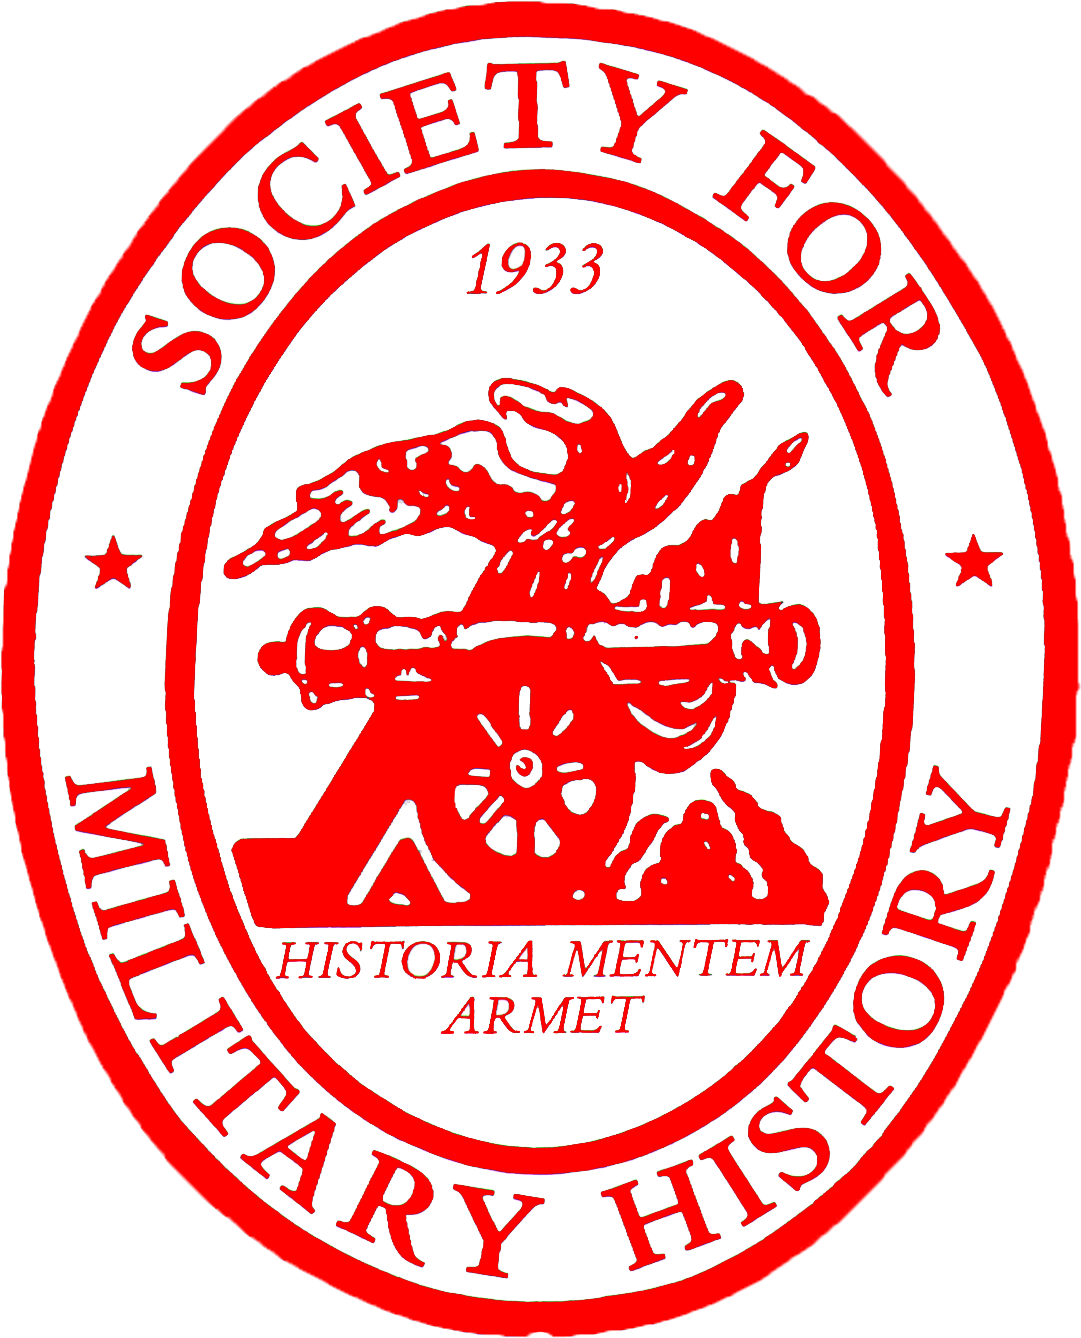 Society for Military History logo